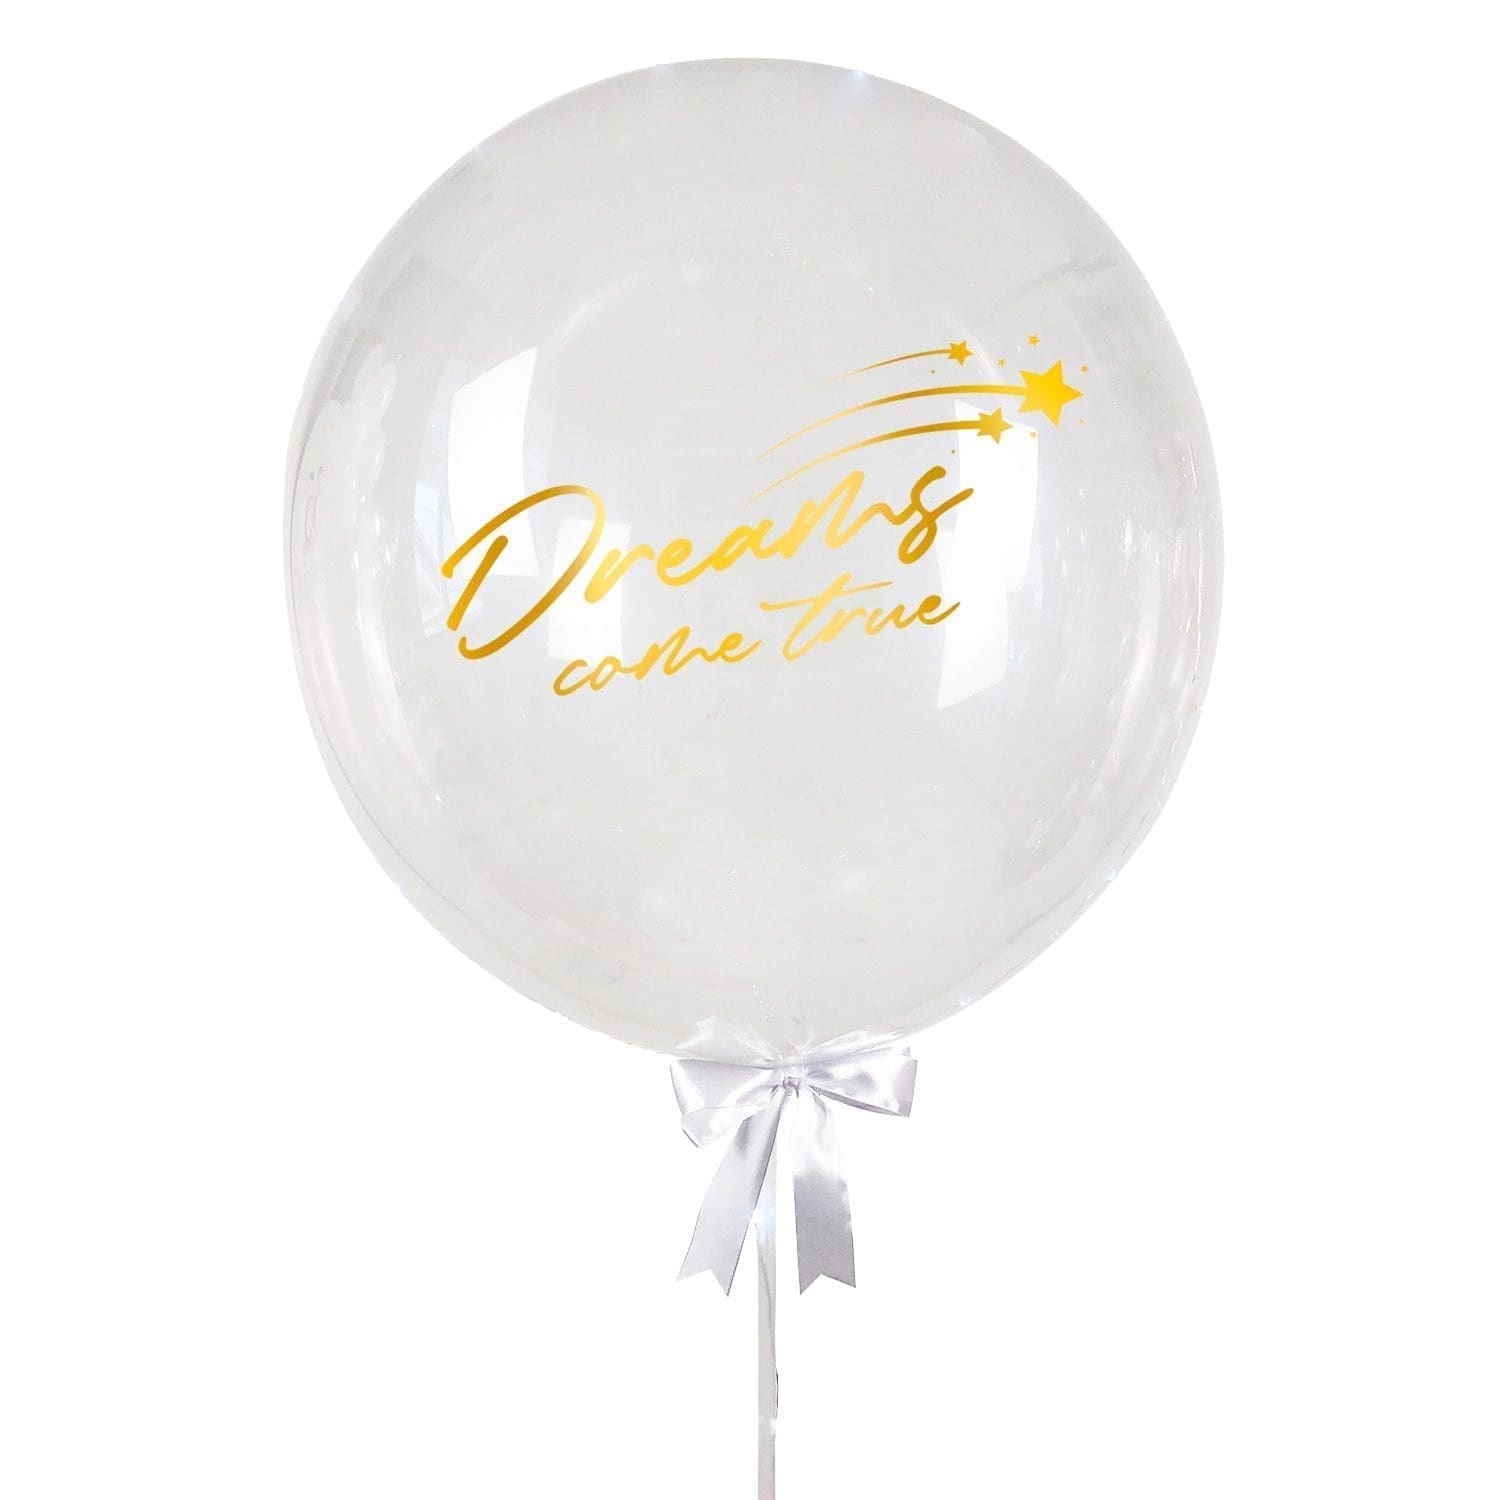 Personalised Bubble Balloon - Dreams Come True